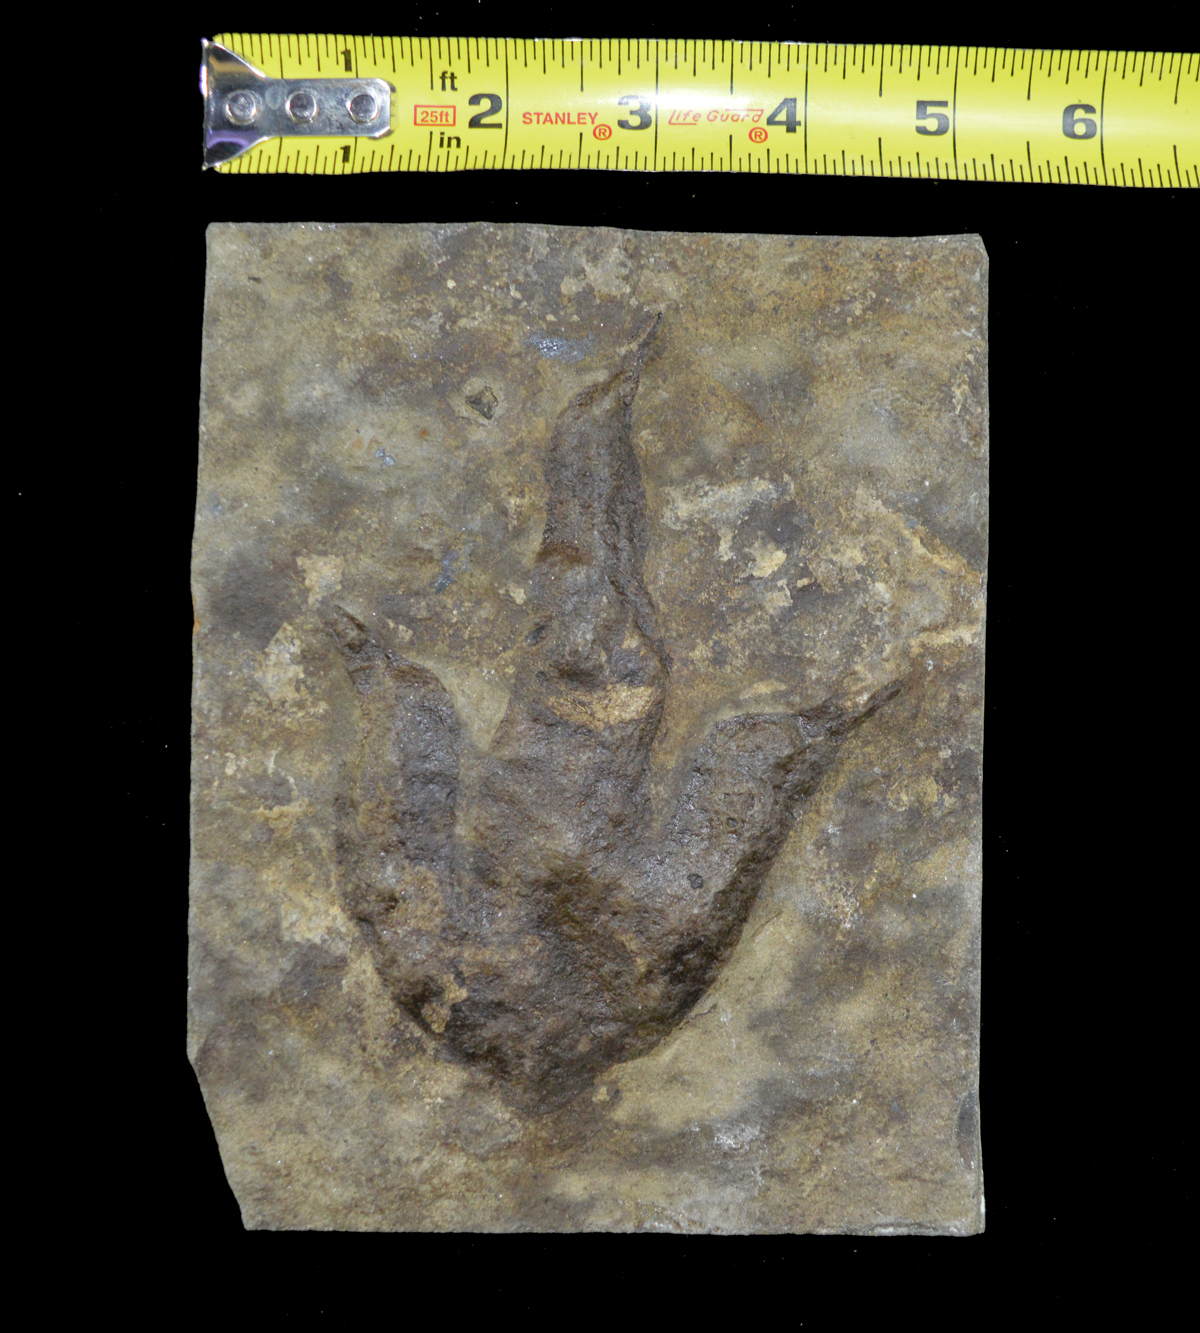 fossil dinosaur footprint